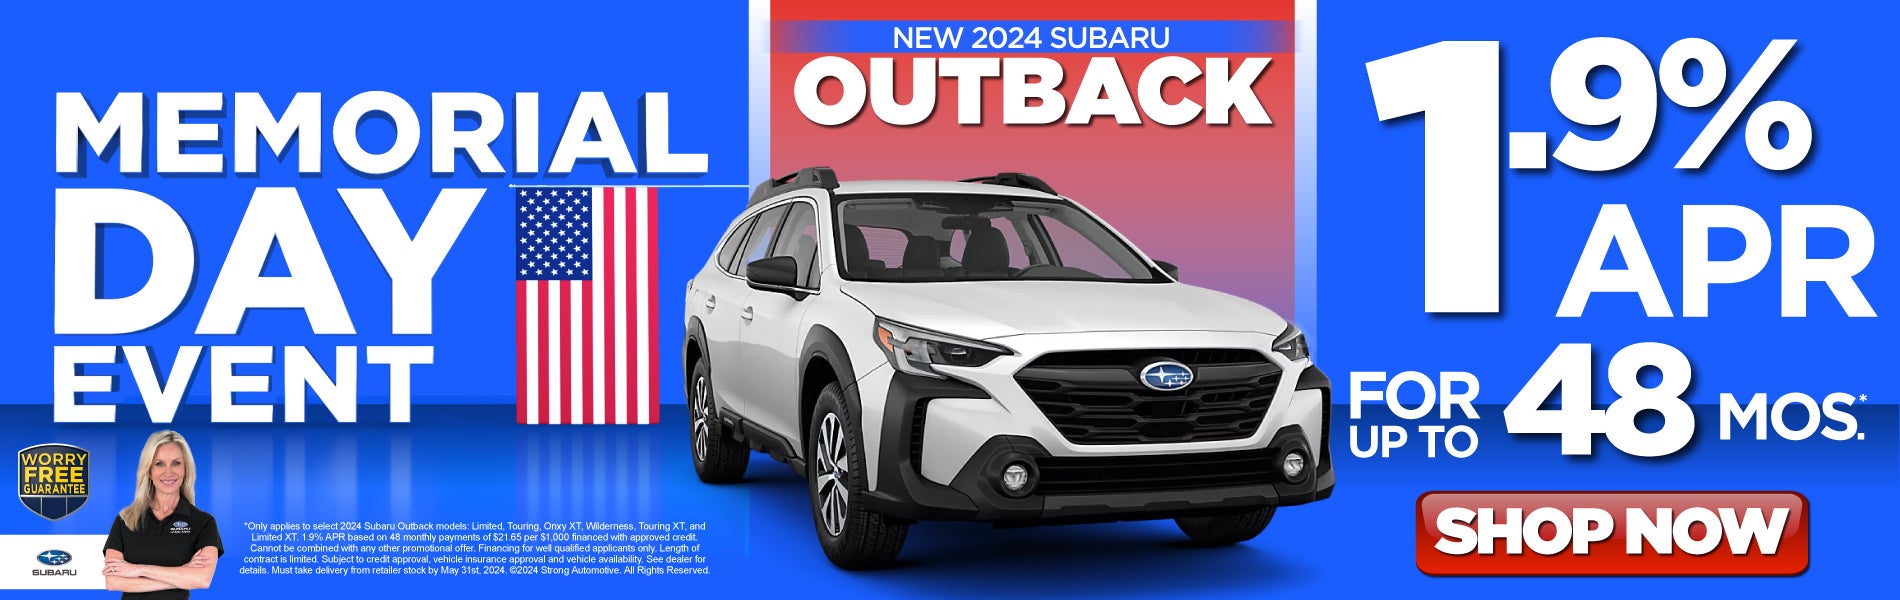 New 2024 Subaru Outback - 1.9% apr* - Shop Now